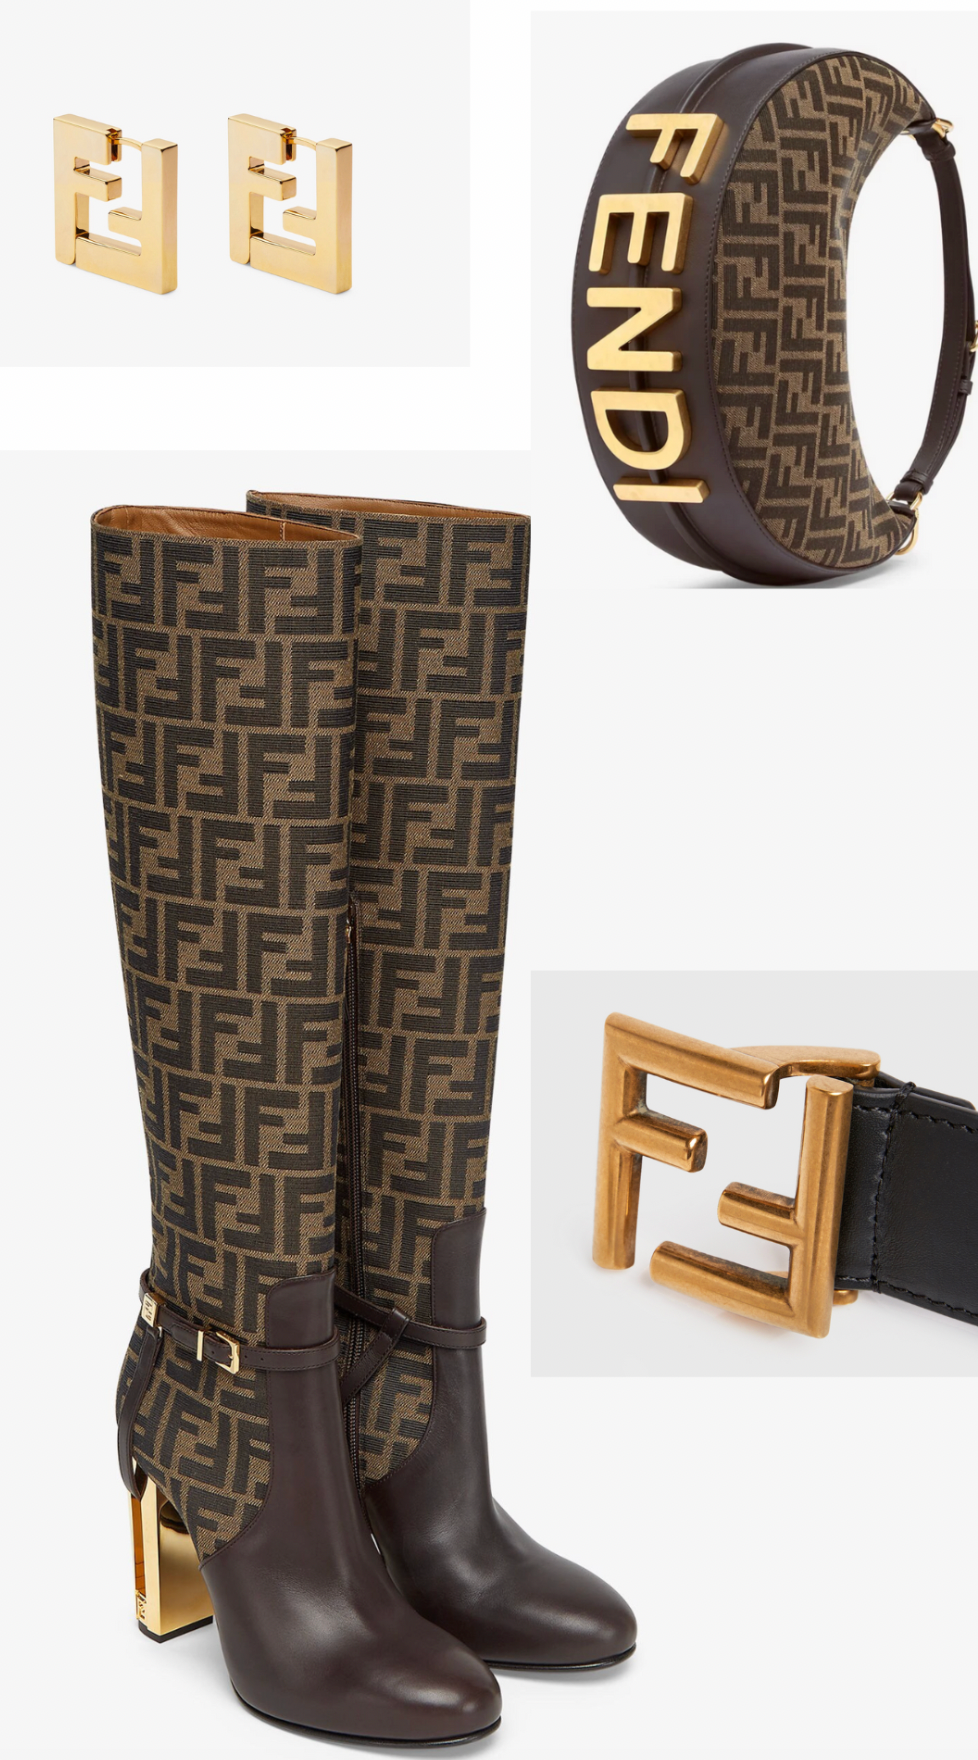 Taj Brown leather high-heeled boot